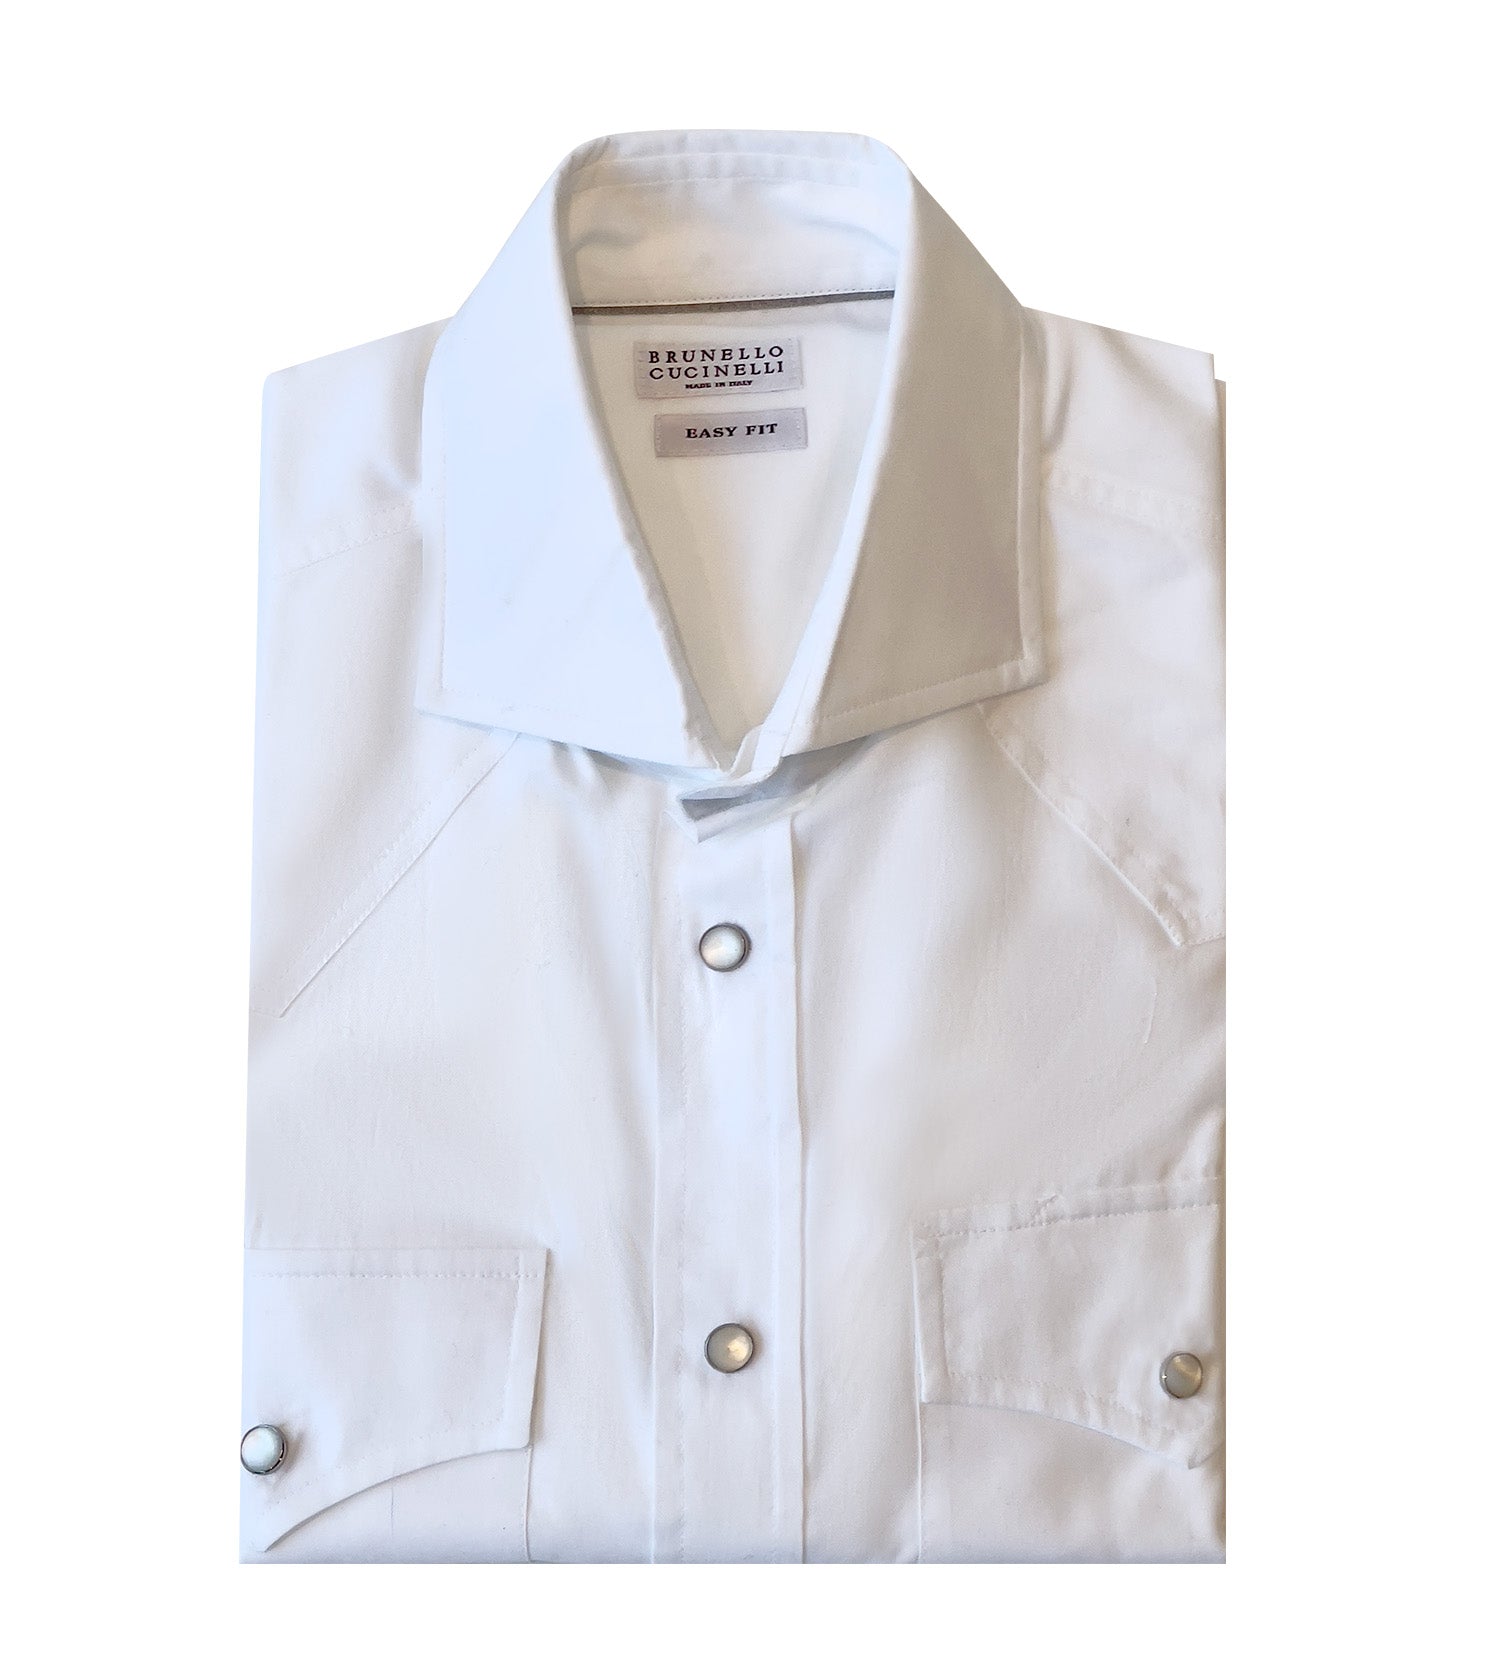 BRUNELLO CUCINELLI Western Snap Button Shirt